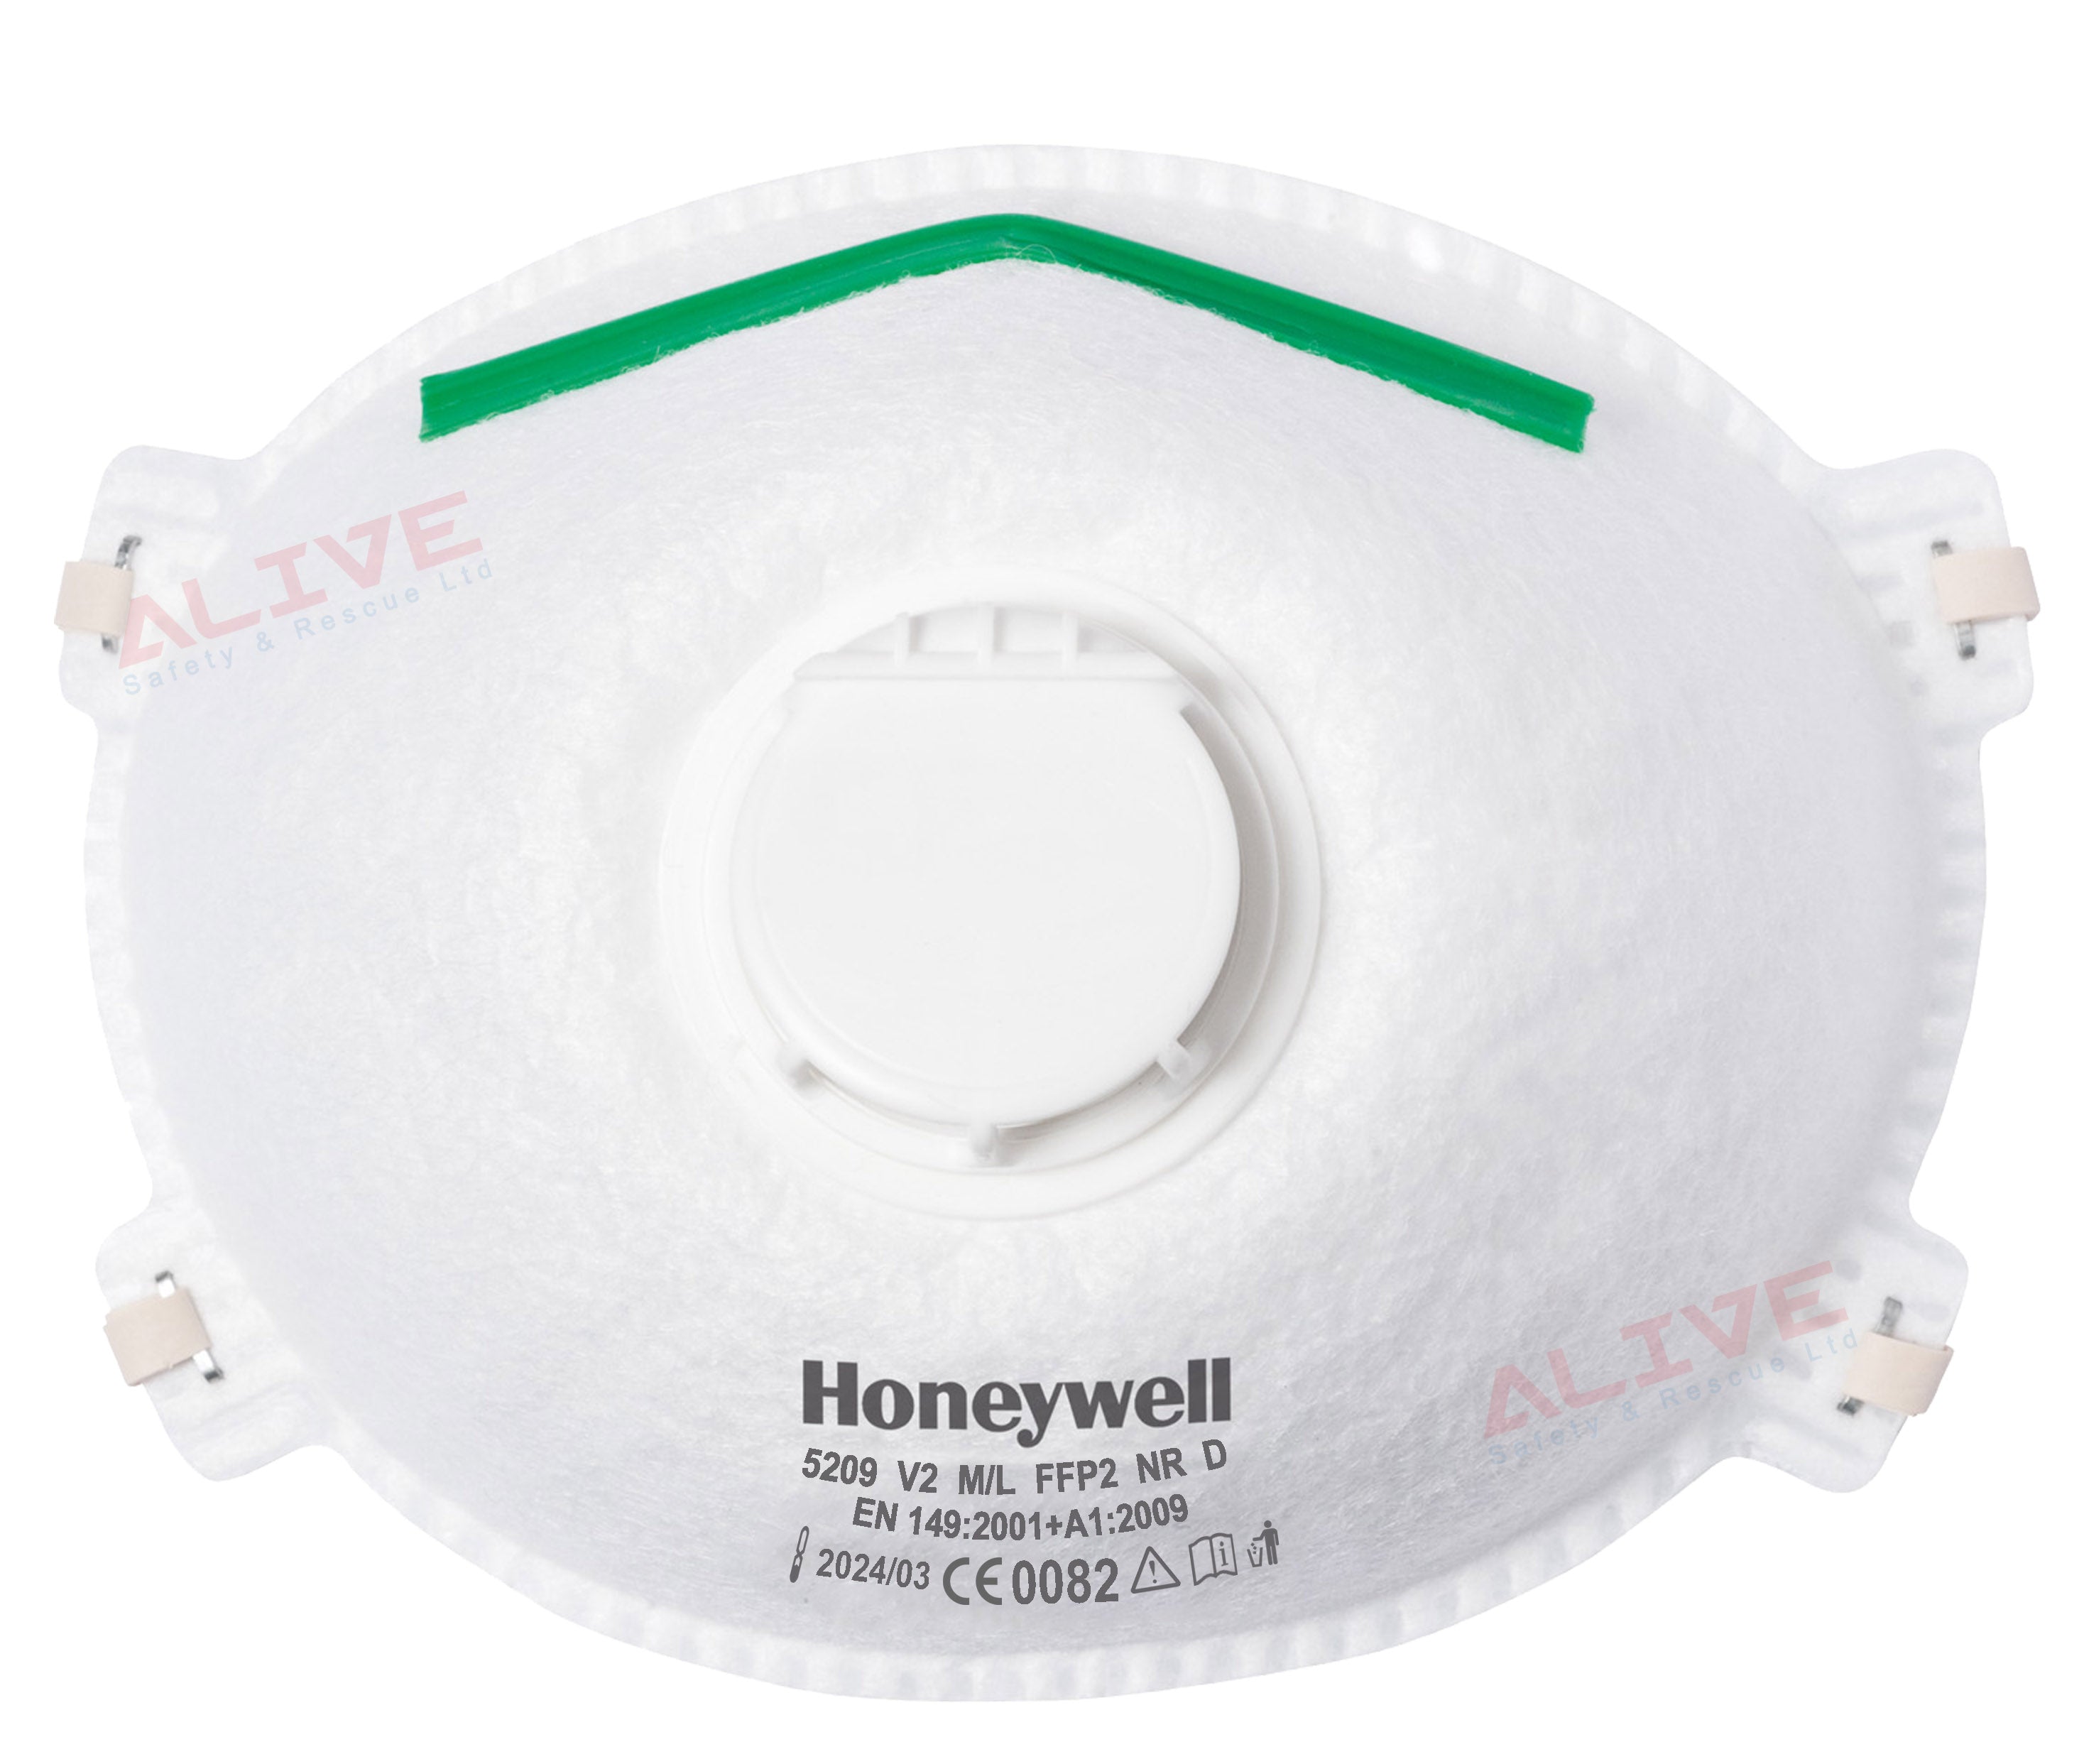 Honeywell 5209 V2 M/L FFP2 NR D Valved Mask - Box of 20